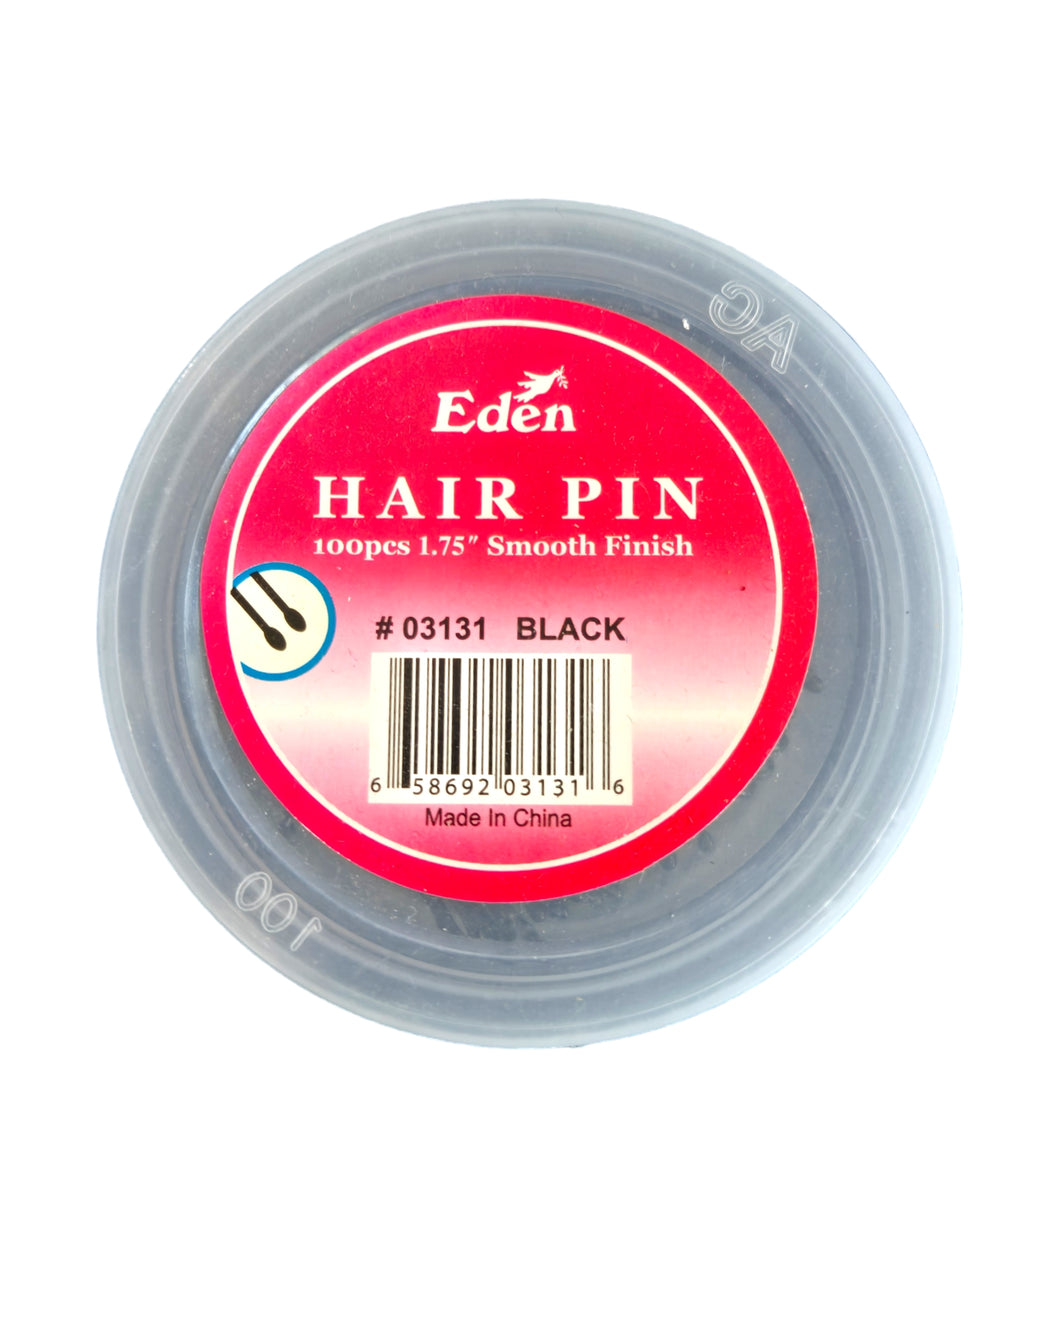 Eden Hair Pin 100pcs 1.75in